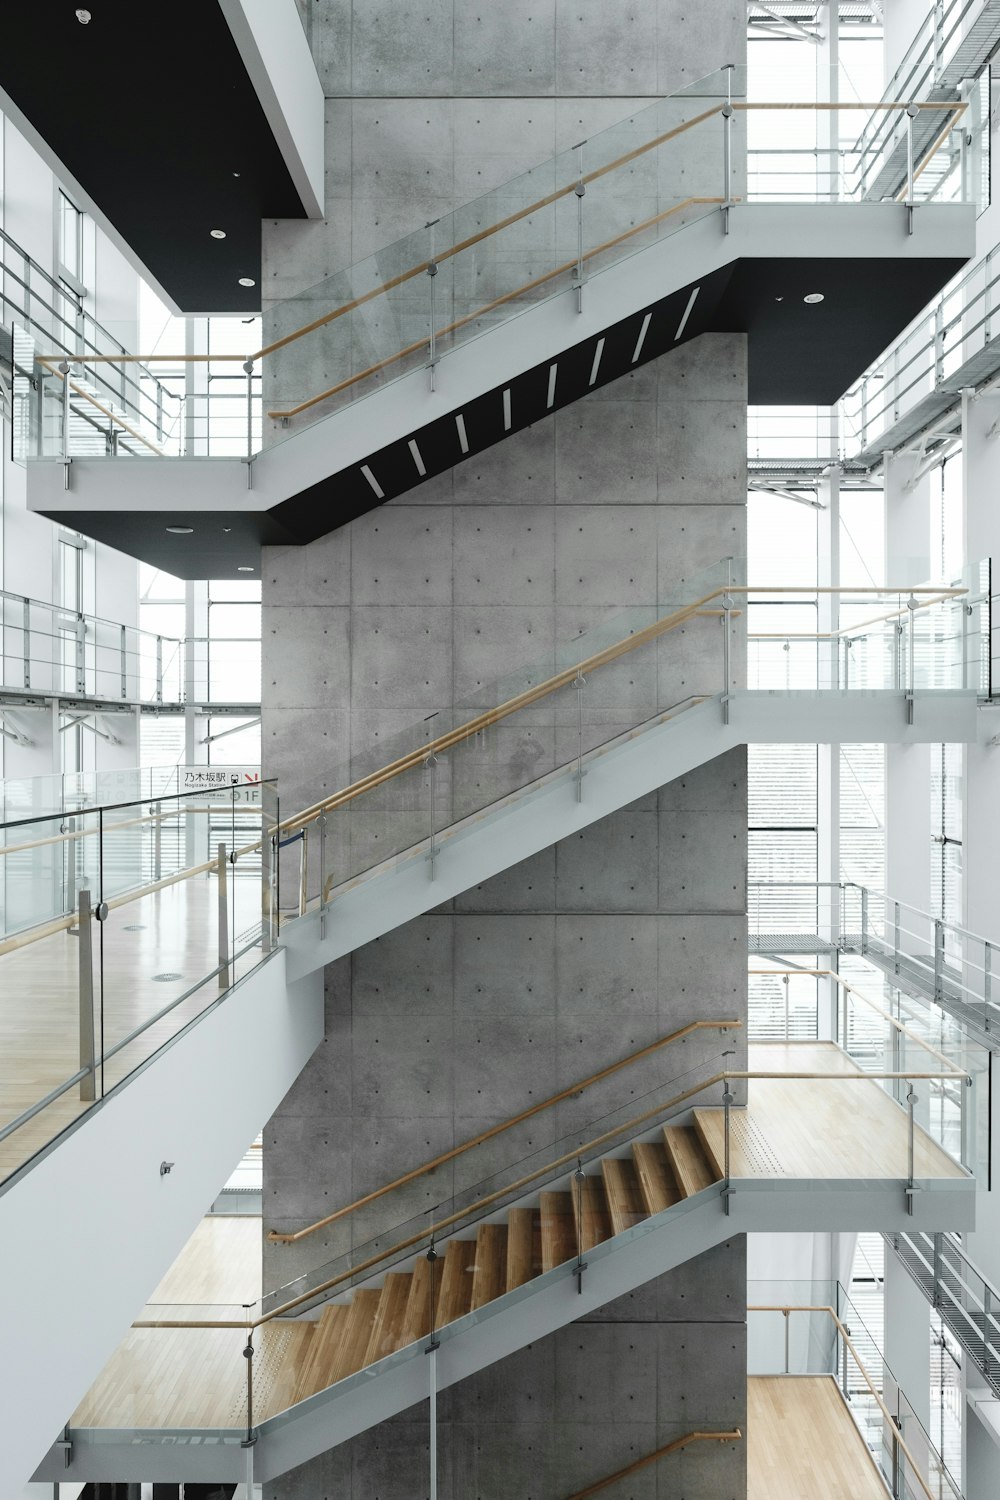 photographie d’architecture d’un bâtiment avec des escaliers